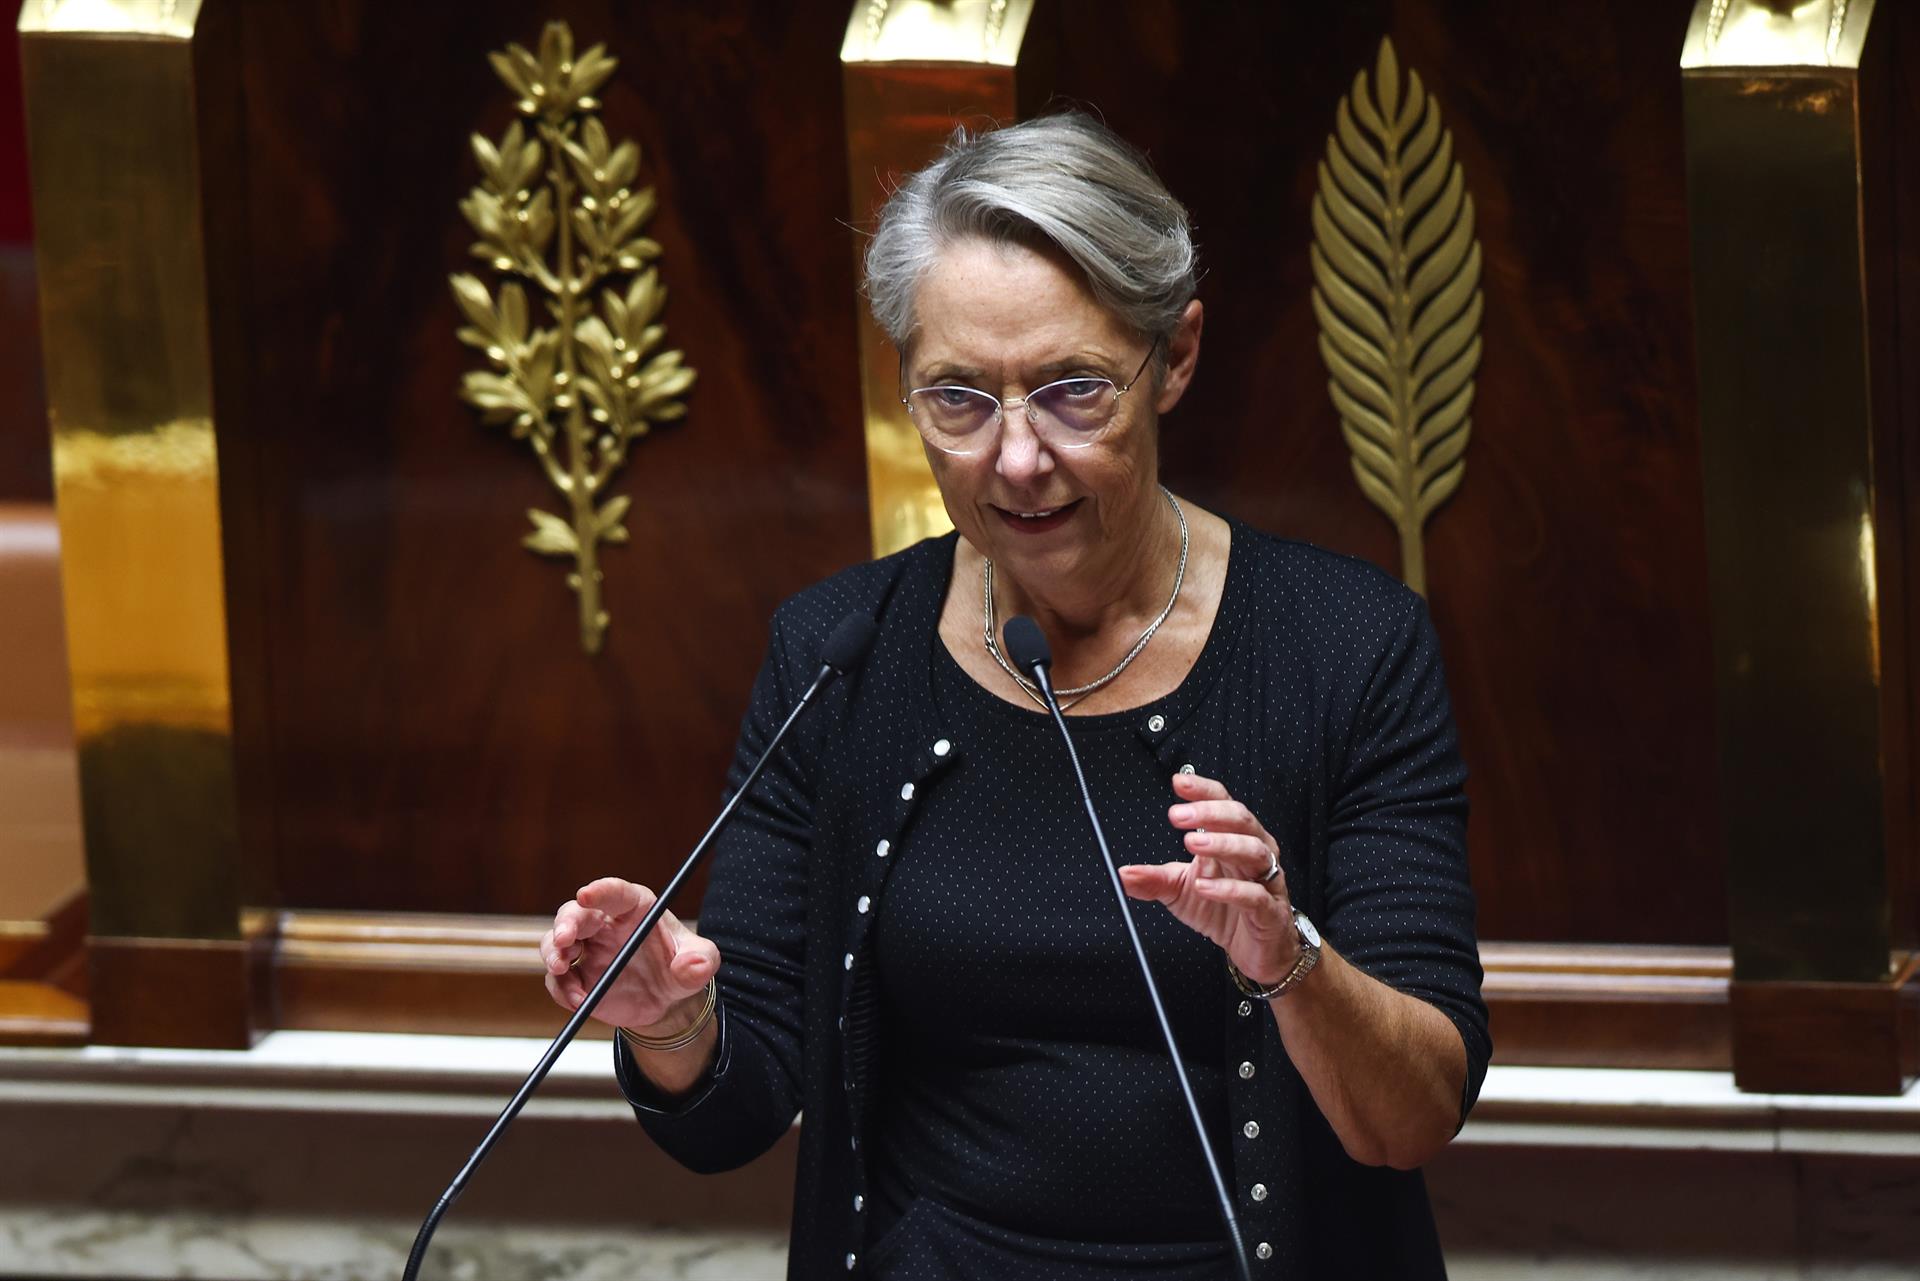 La primera ministra francesa, Elisabeth Borne, pronuncia un discurso durante una sesión pública en la Cámara de la Asamblea Nacional en París, Francia, el 19 de octubre de 2022. EFE/EPA/Mohammed Badra